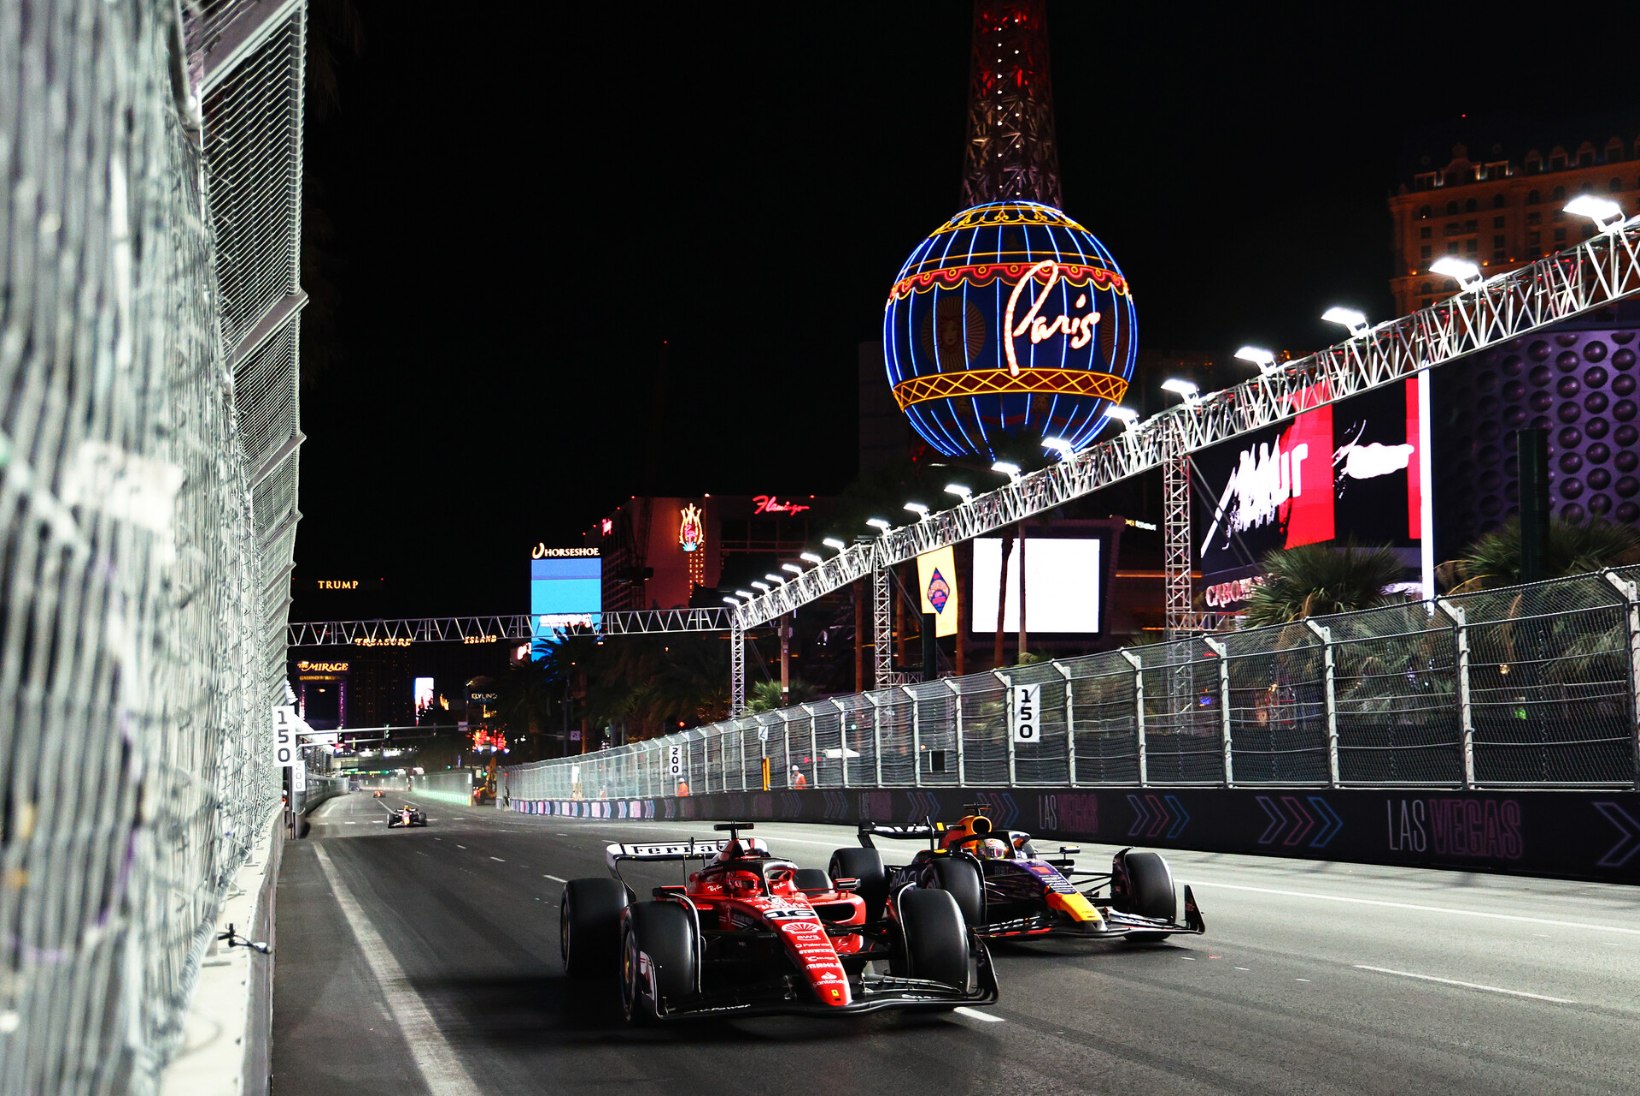 VABAMÄE KOMMENTAAR | Lõpp hea, kõik hea – kas see ongi lause, millega esimene Las Vegase Grand Prix ajalukku jäädvustub? 